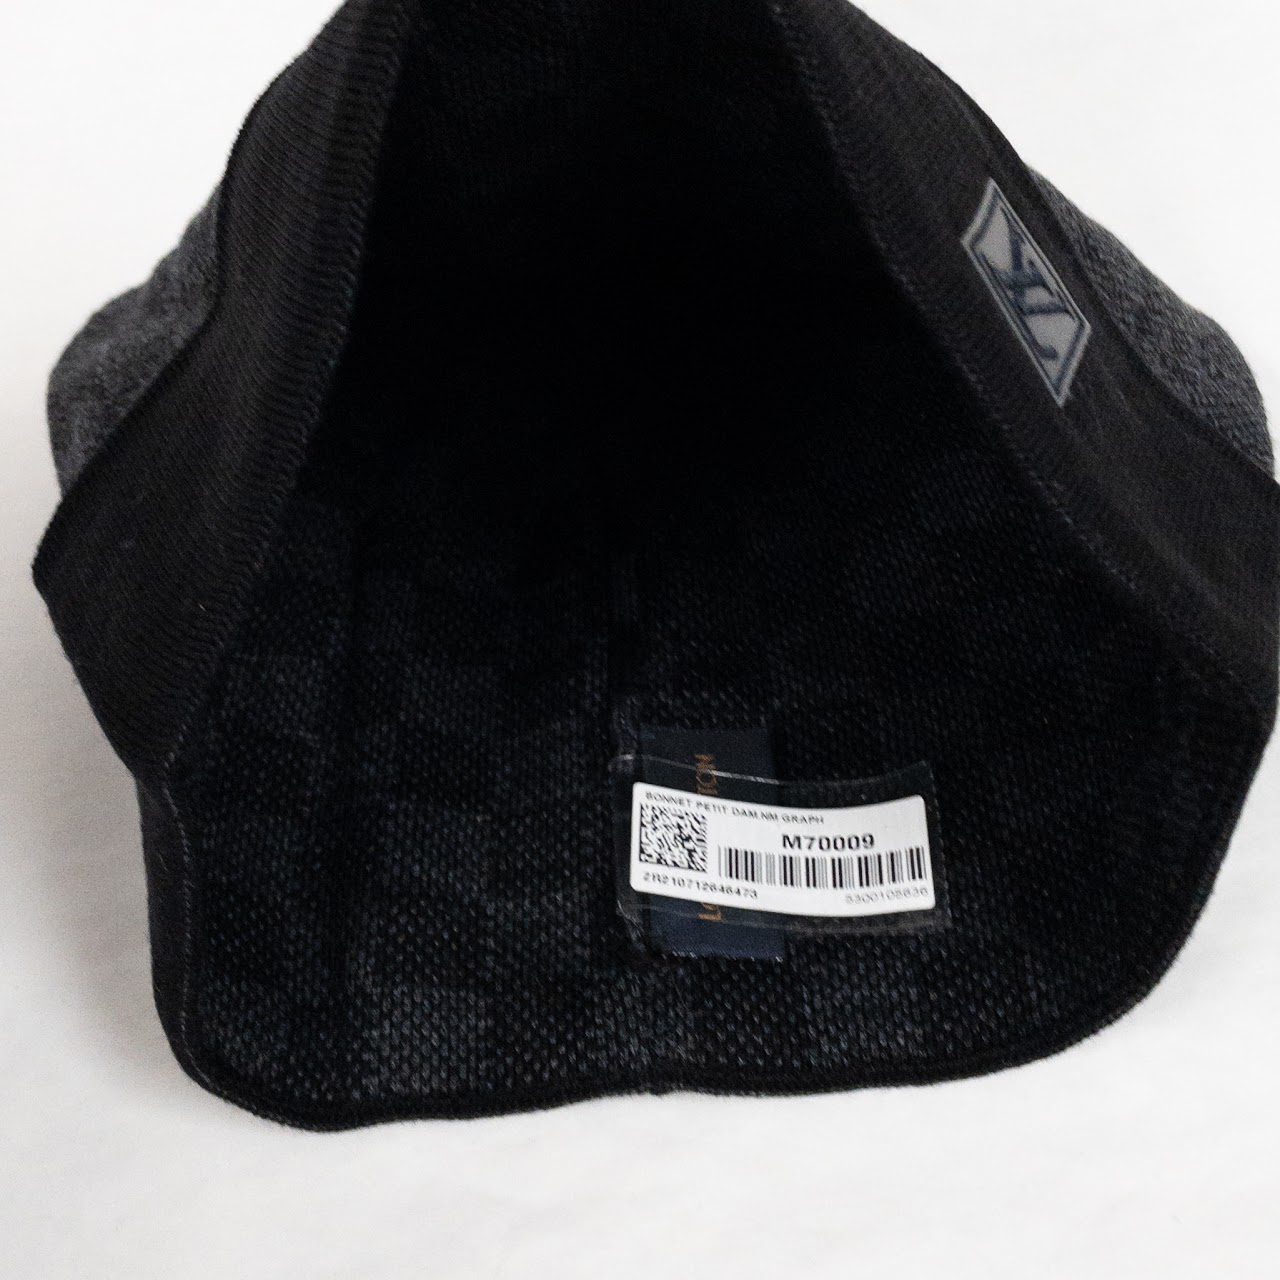 LOUIS VUITTON PETIT DAMIER HAT (Black/Graphite) £170.00 - PicClick UK